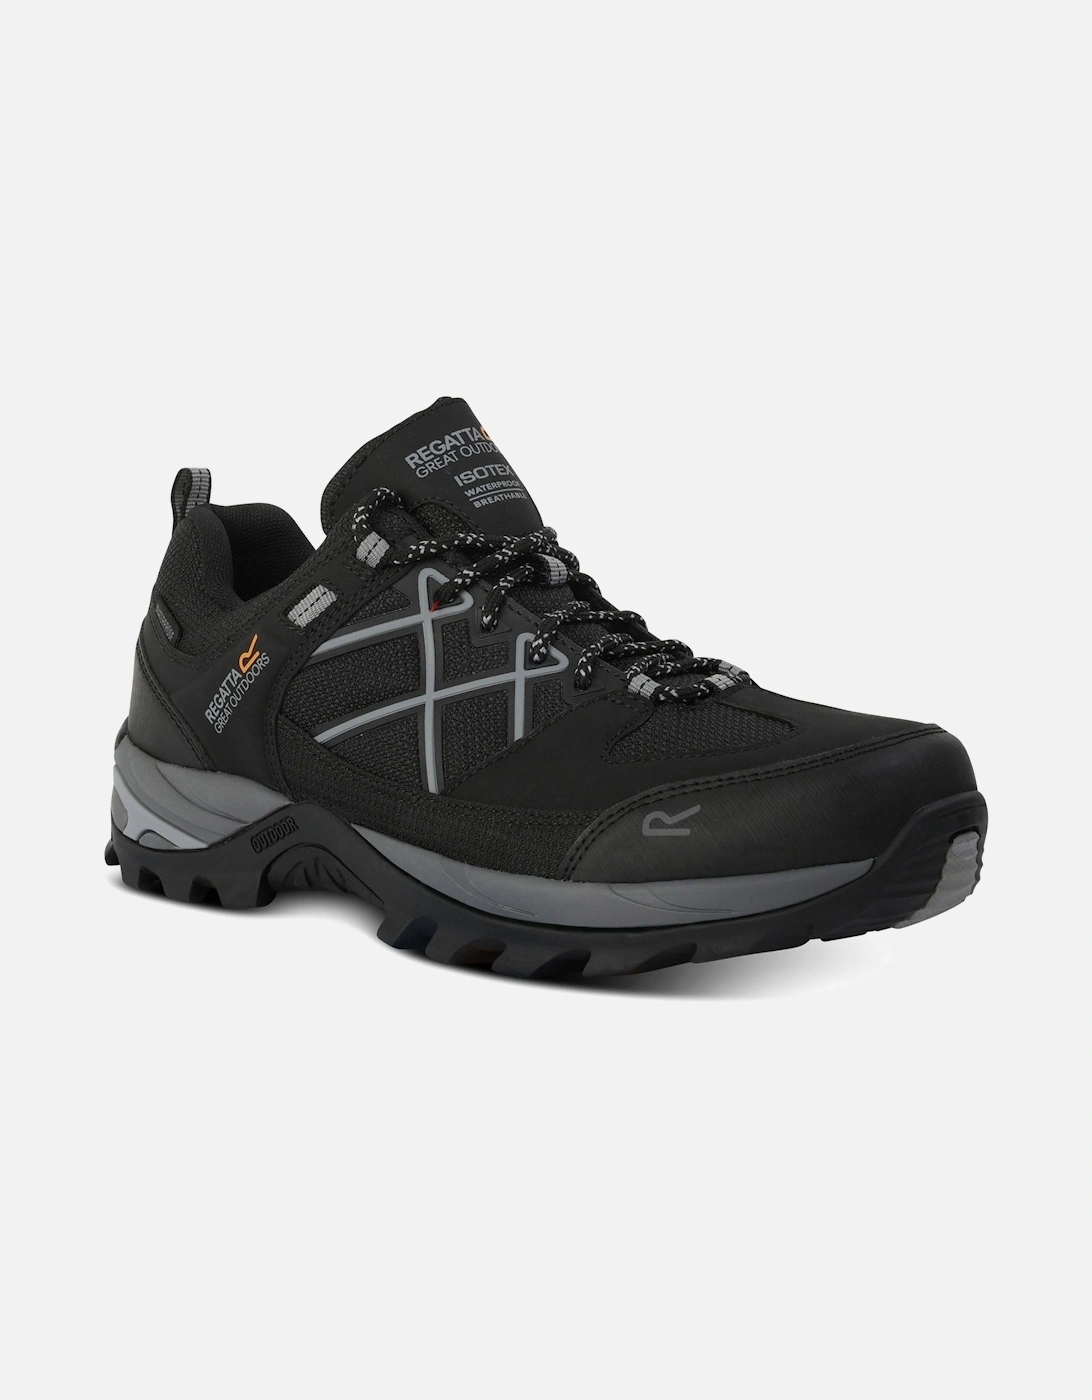 Mens Samaris III Waterproof Walking Shoes - Black/Granit, 8 of 7